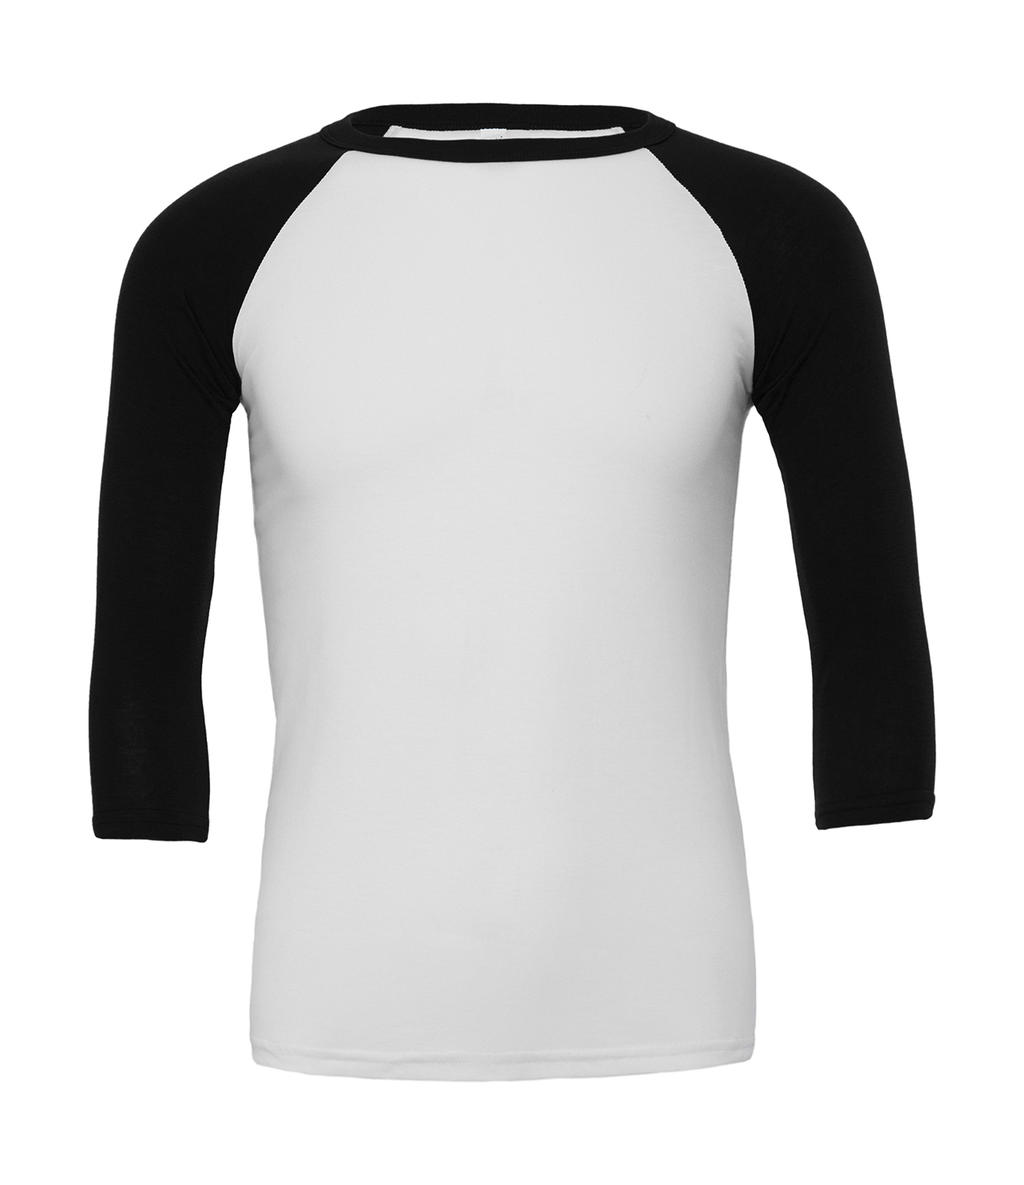  Unisex 3/4 Sleeve Baseball T-Shirt in Farbe White/Black